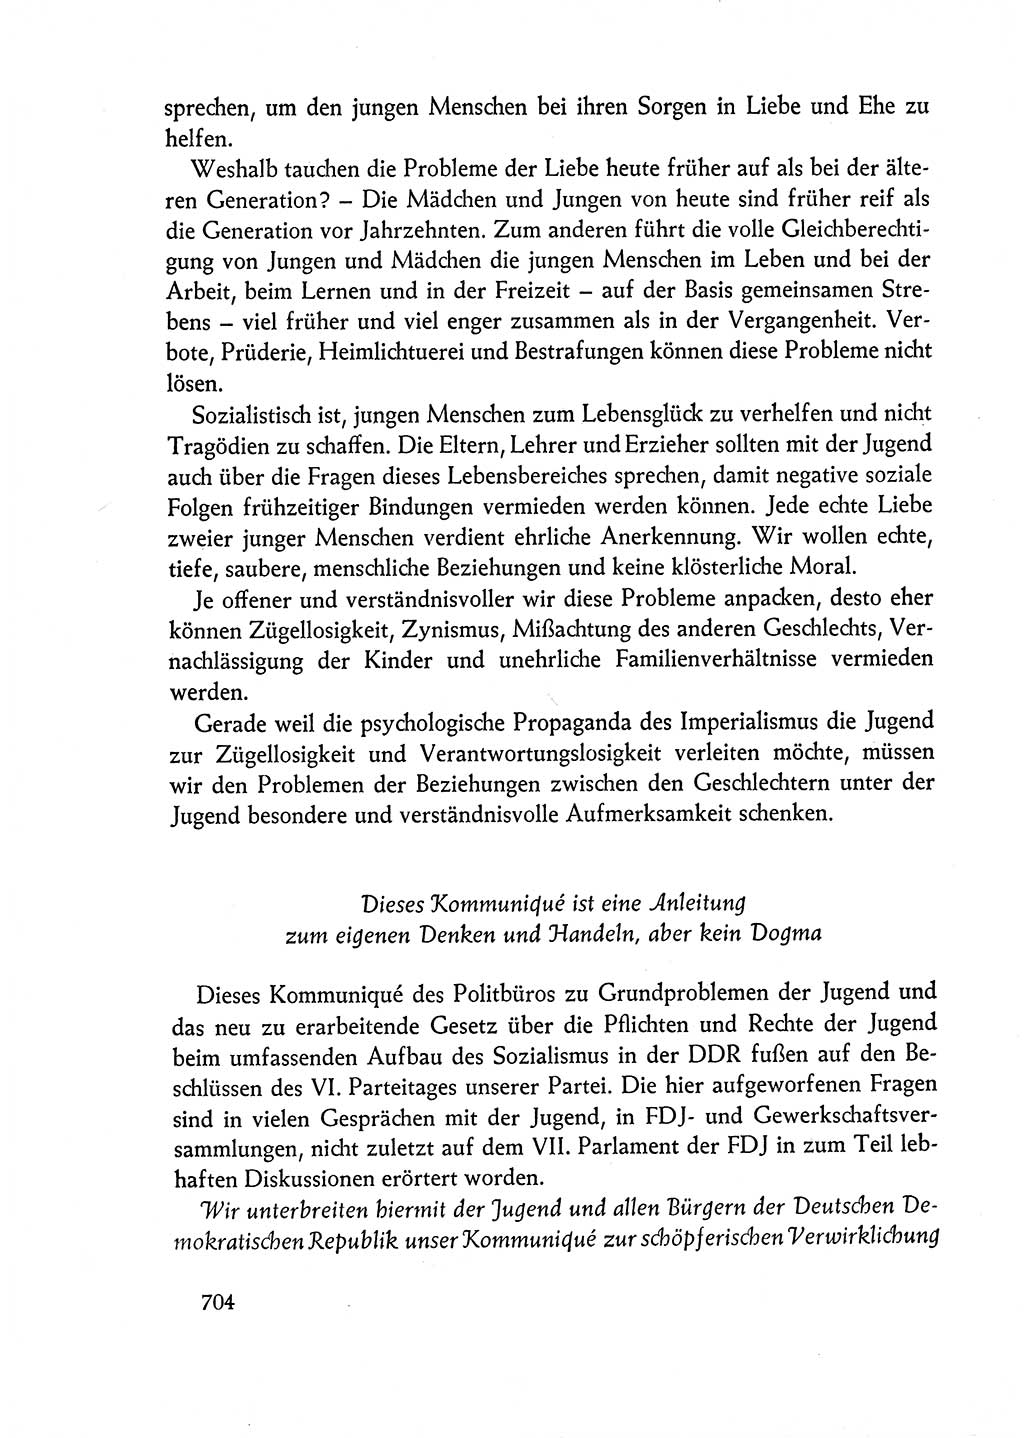 Dokumente der Sozialistischen Einheitspartei Deutschlands (SED) [Deutsche Demokratische Republik (DDR)] 1962-1963, Seite 704 (Dok. SED DDR 1962-1963, S. 704)